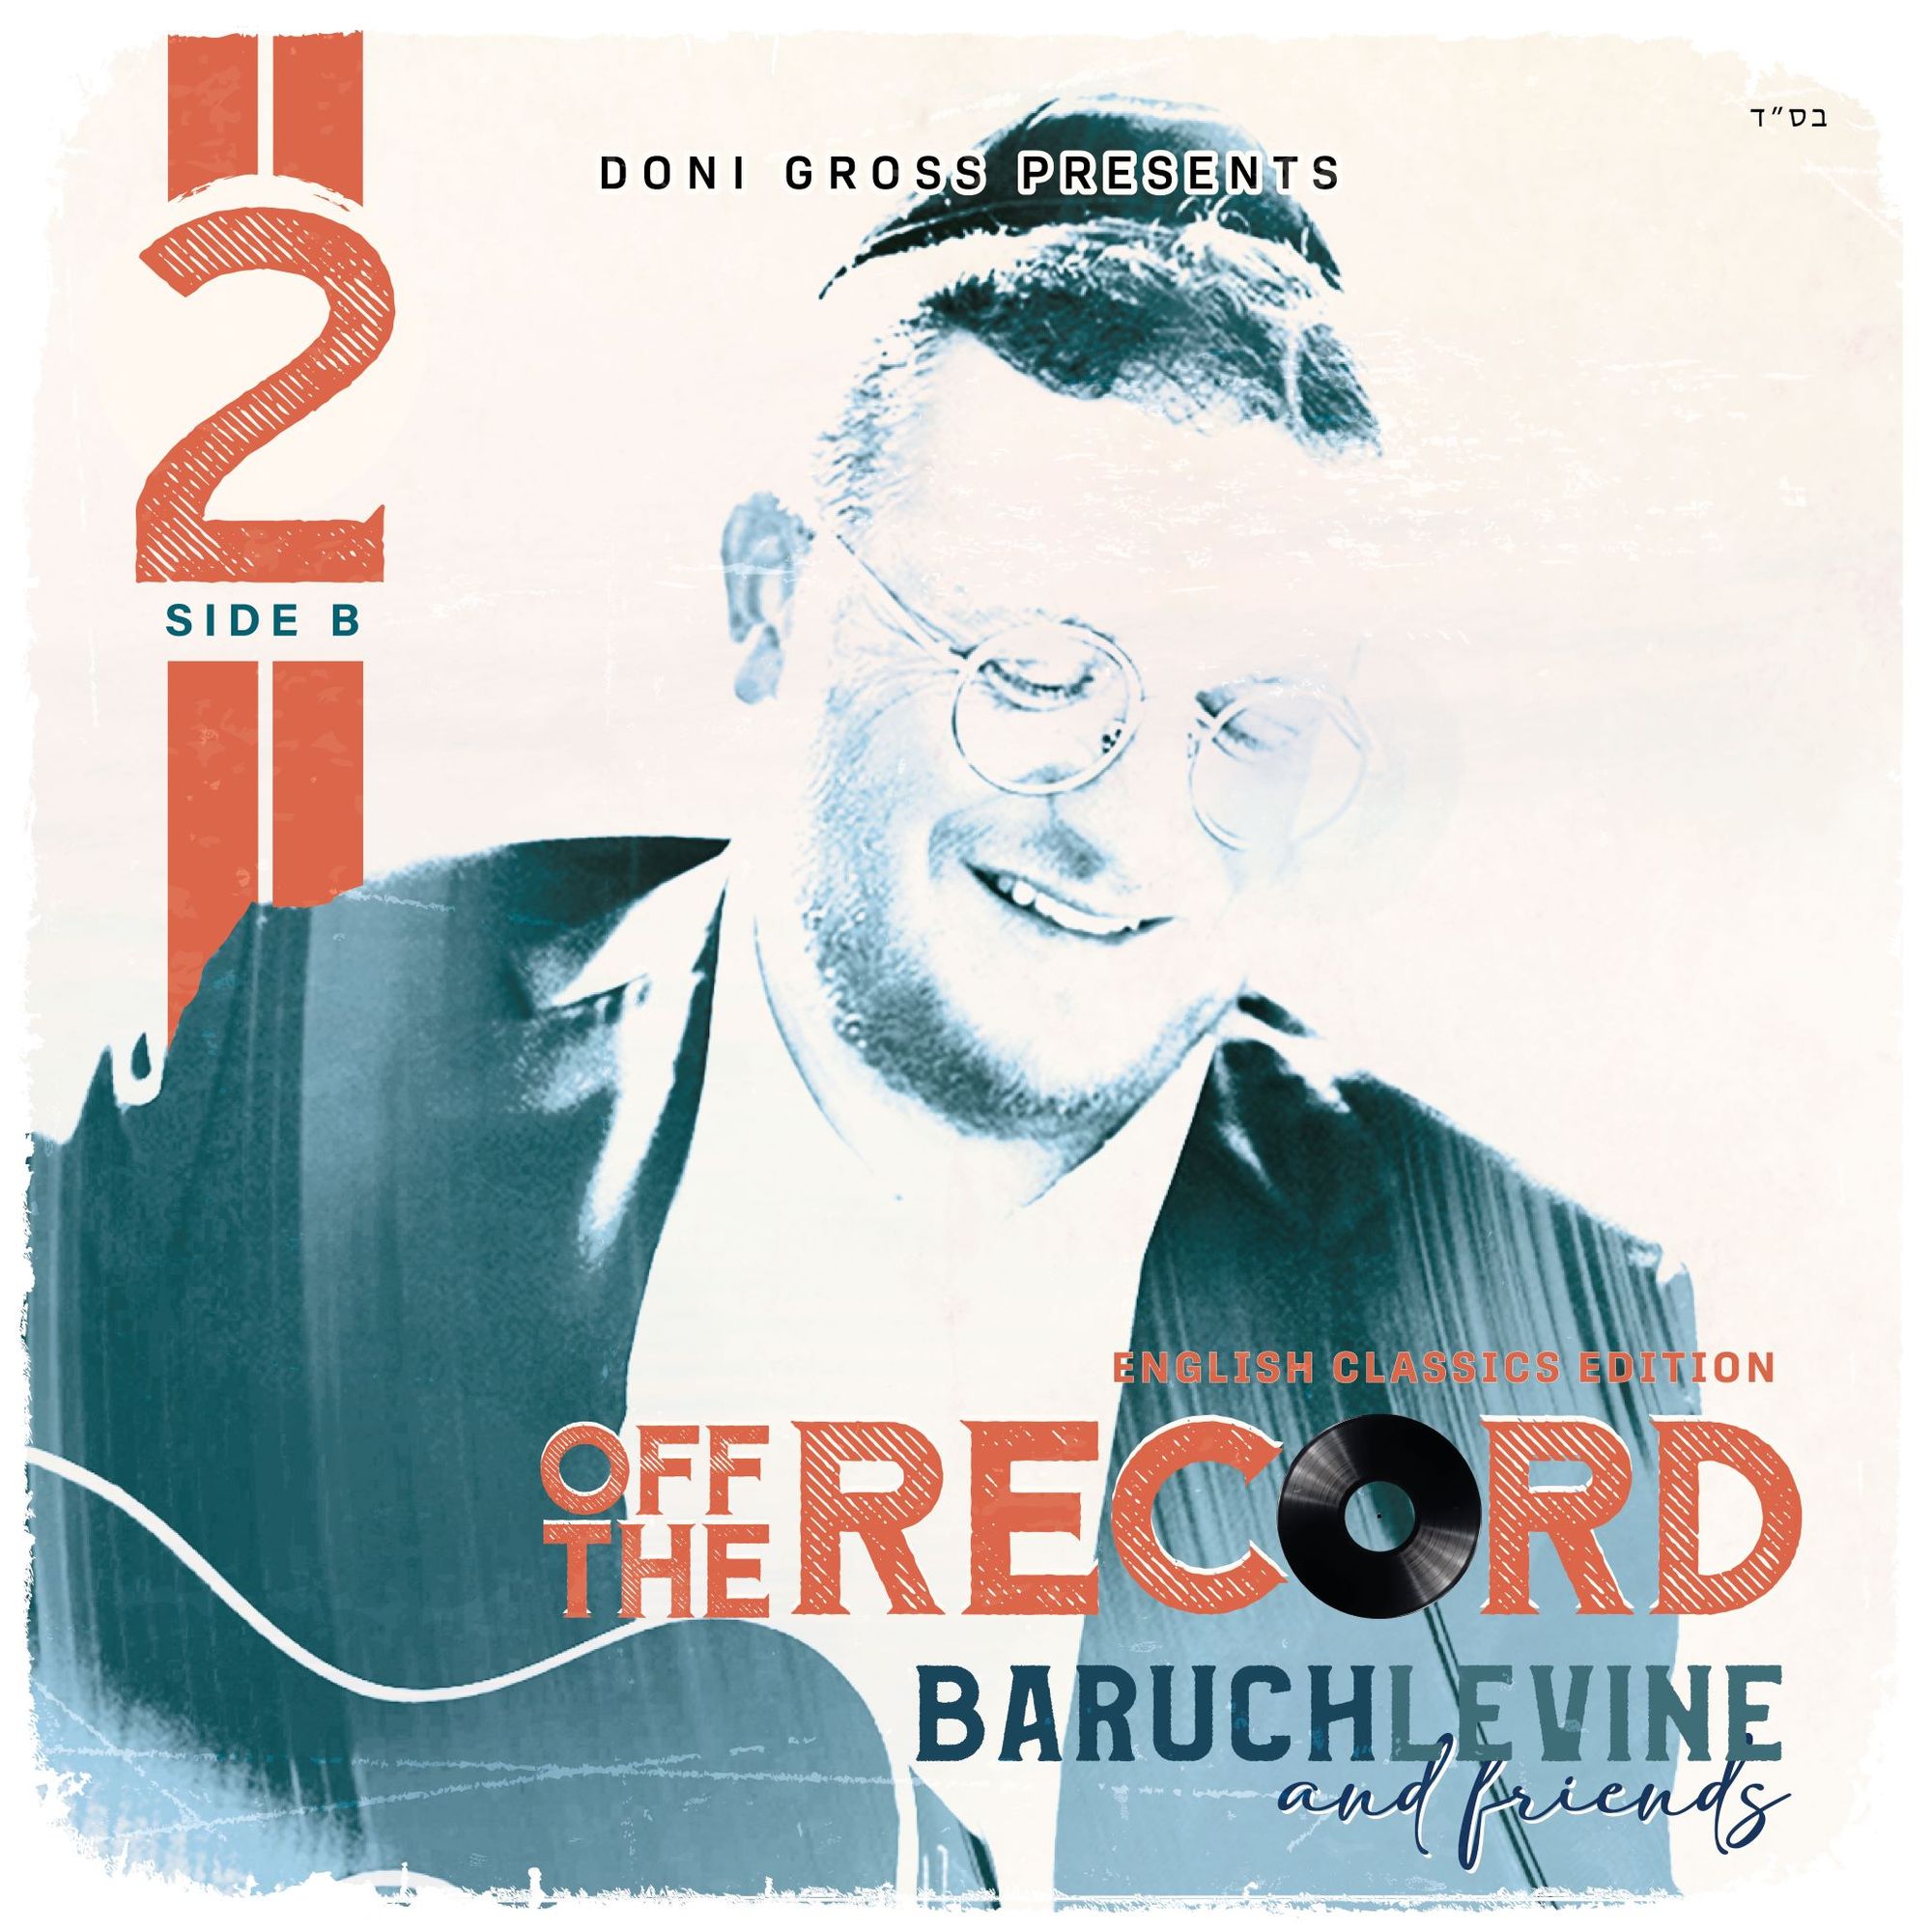 ברוך לוין וחברים - 2 Off the Record - אלבום חדש - Baruch Levine 